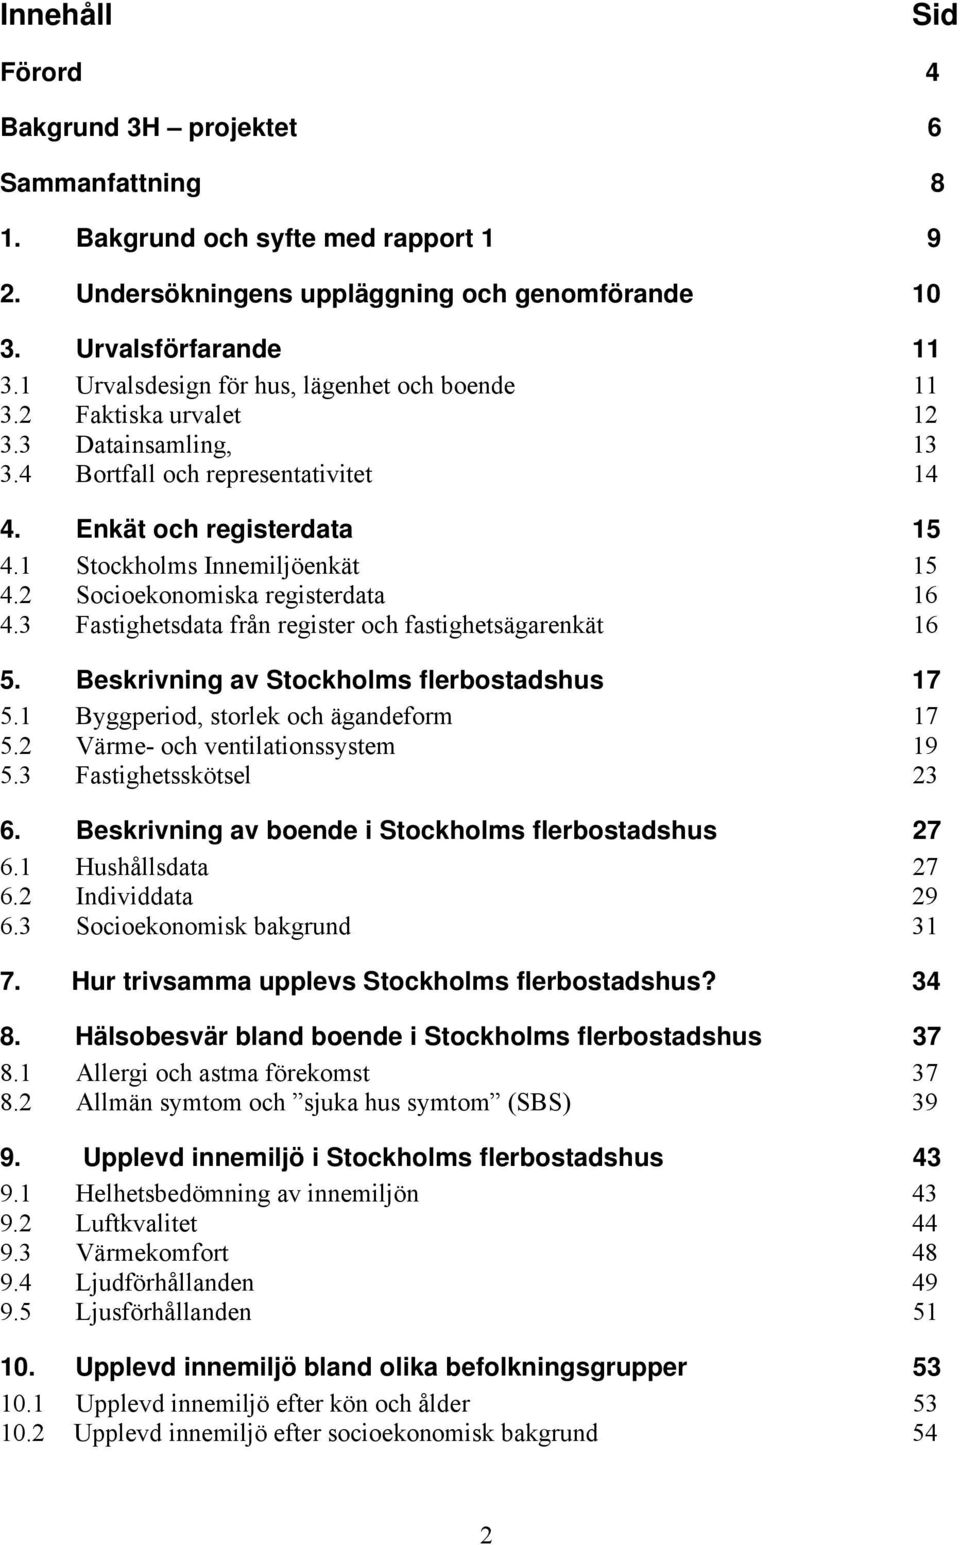 2 Socioekonomiska registerdata 16 4.3 Fastighetsdata från register och fastighetsägarenkät 16 5. Beskrivning av Stockholms flerbostadshus 17 5.1 Byggperiod, storlek och ägandeform 17 5.